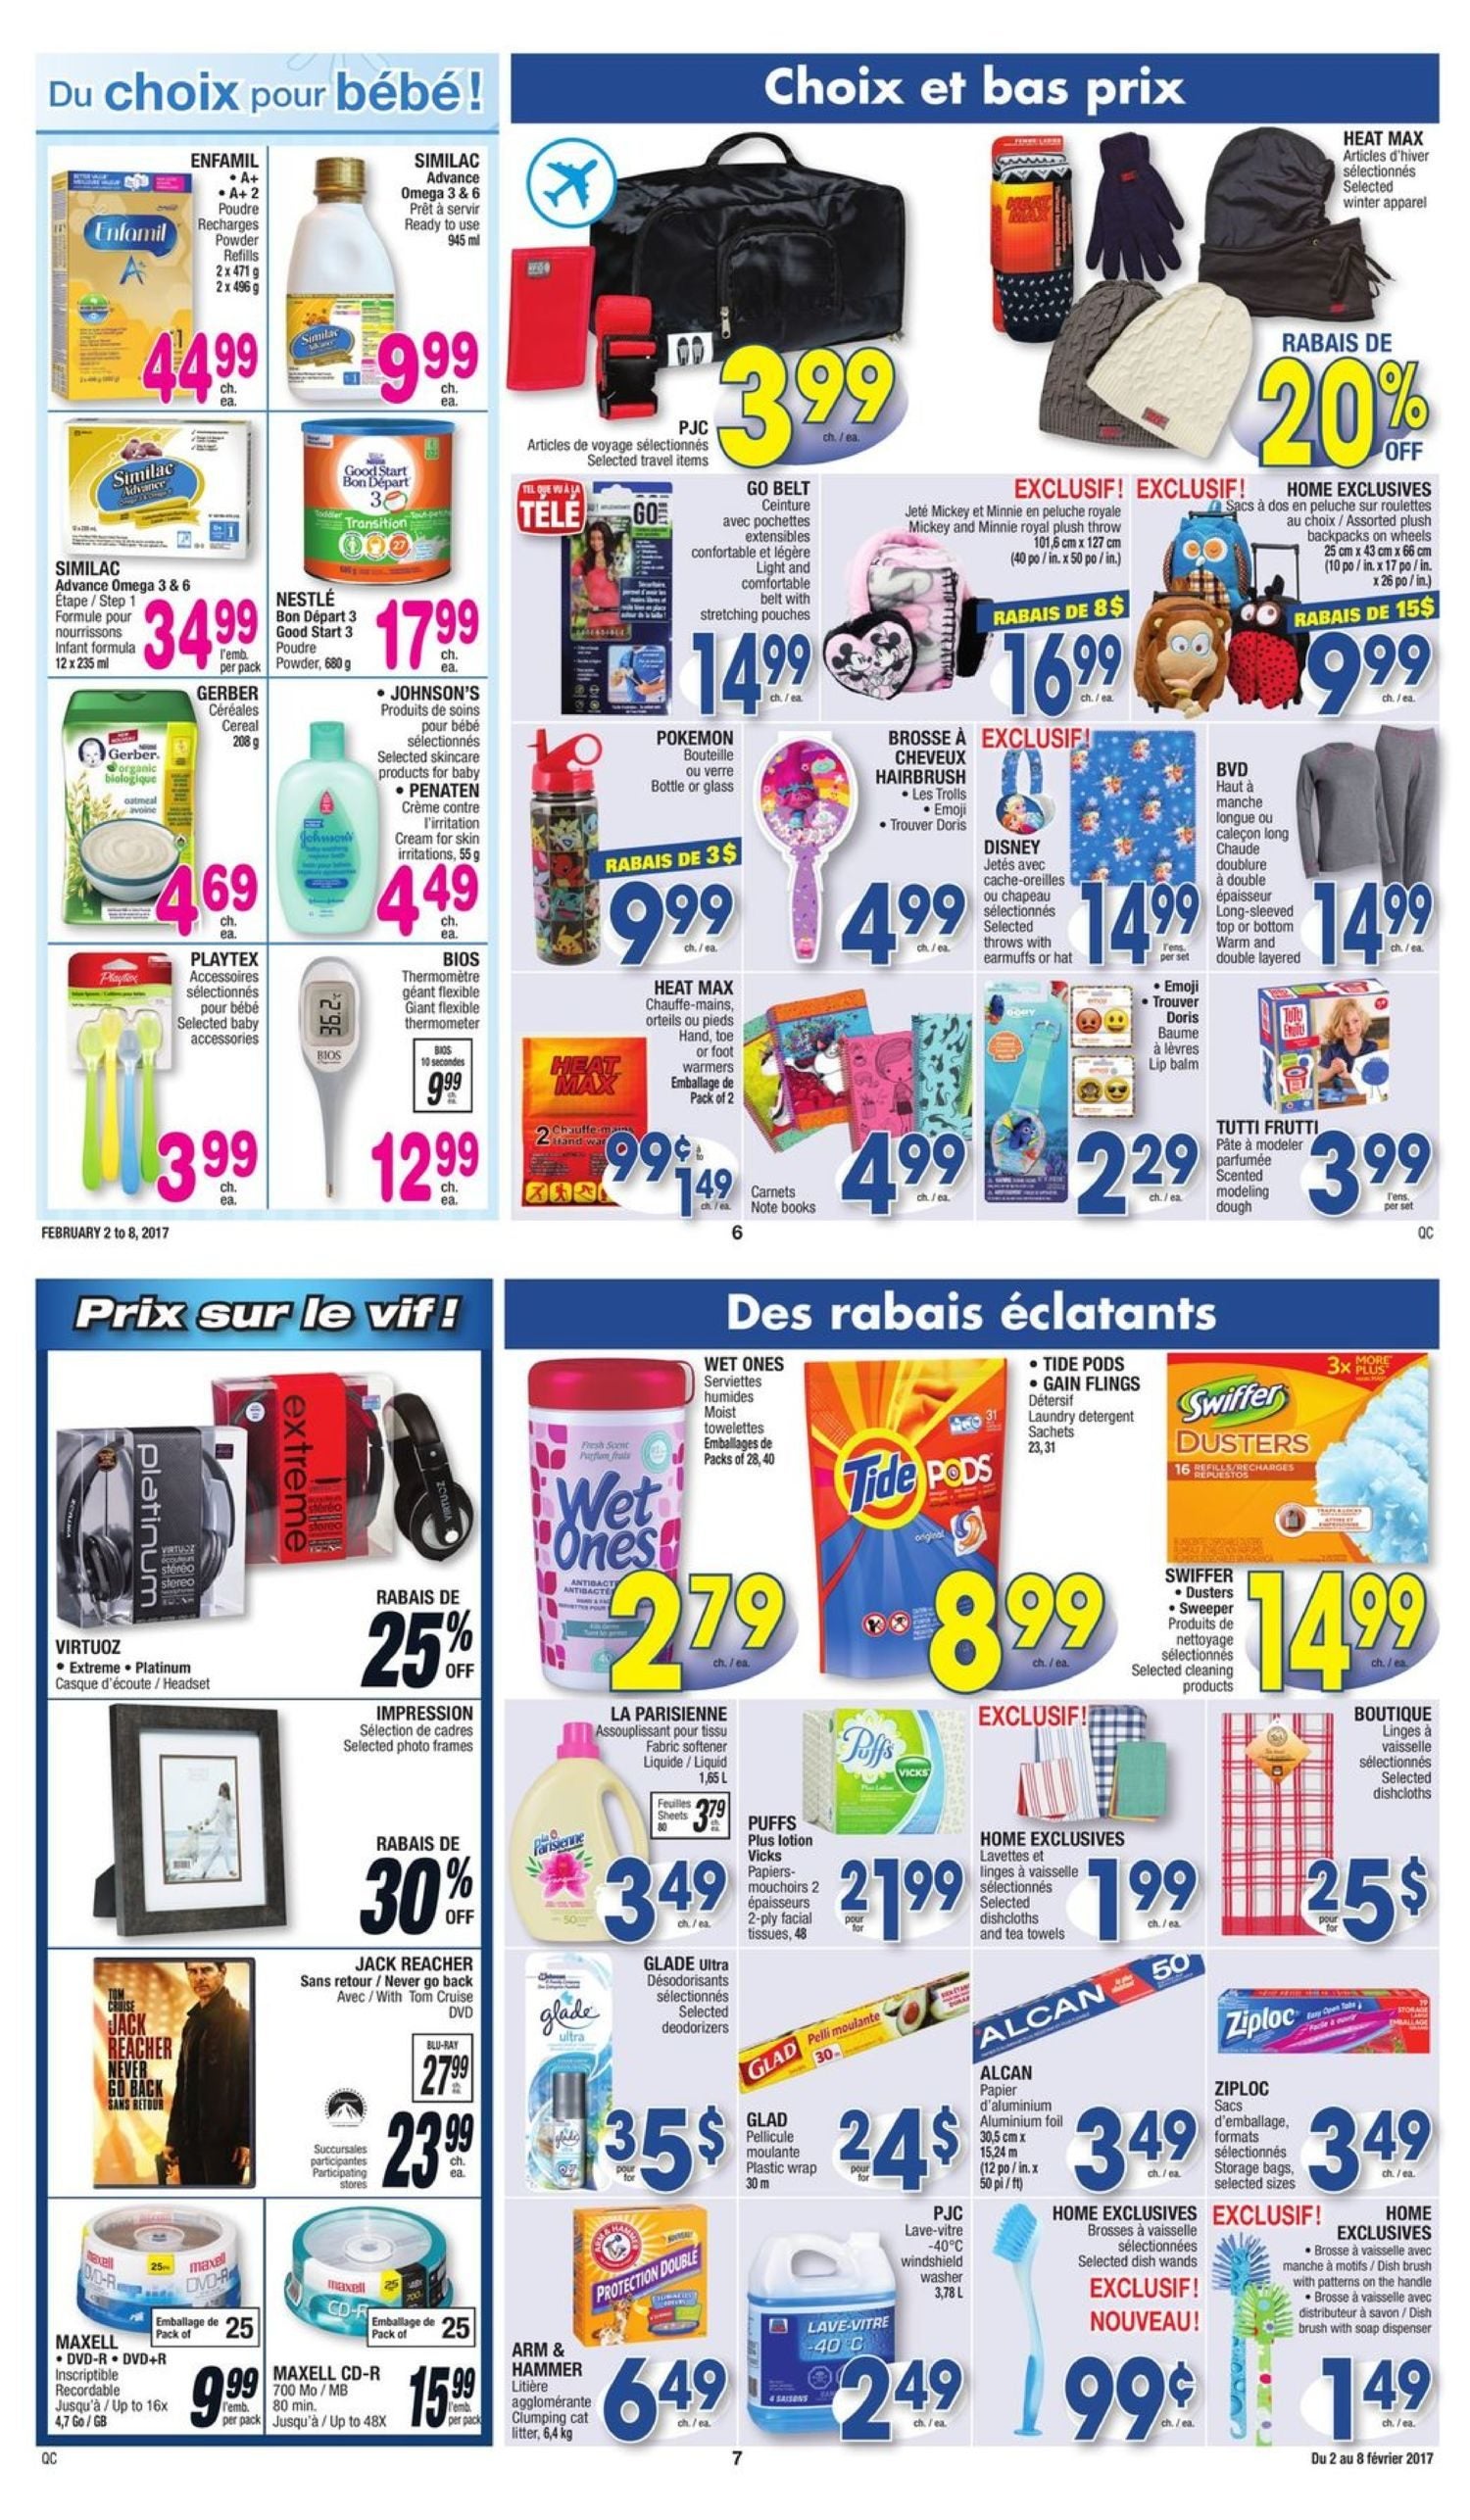 Jean Coutu Weekly Flyer - More Savings Every Week - Feb 2 – 8 